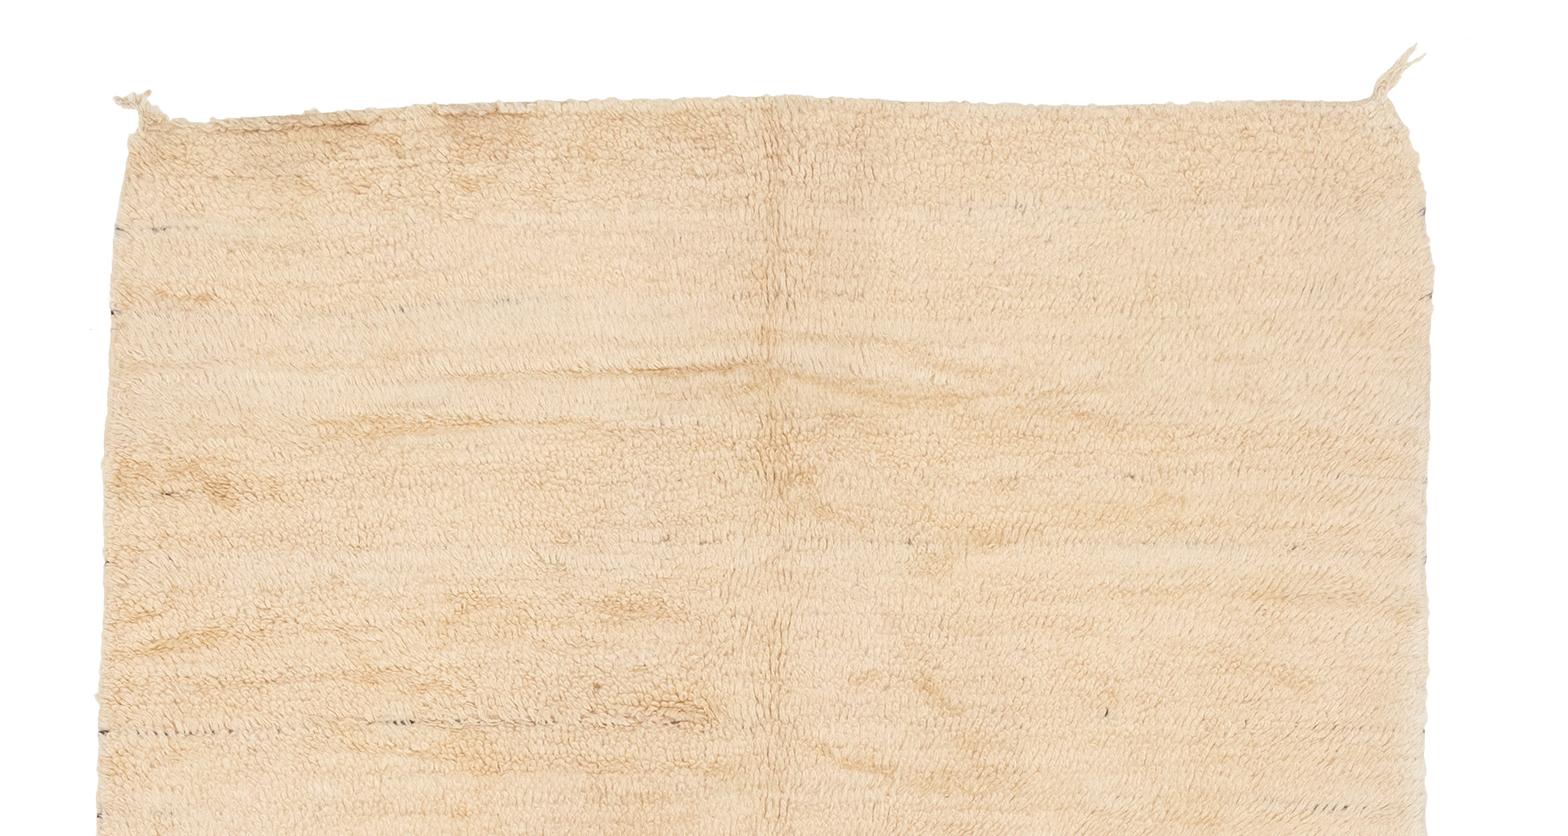 Très beau tapis Beni Ourain avec des détails de boucles propres, par opposition à un tapis à poils longs. Une frange de tresse propre avec une couture nouée sur un côté.